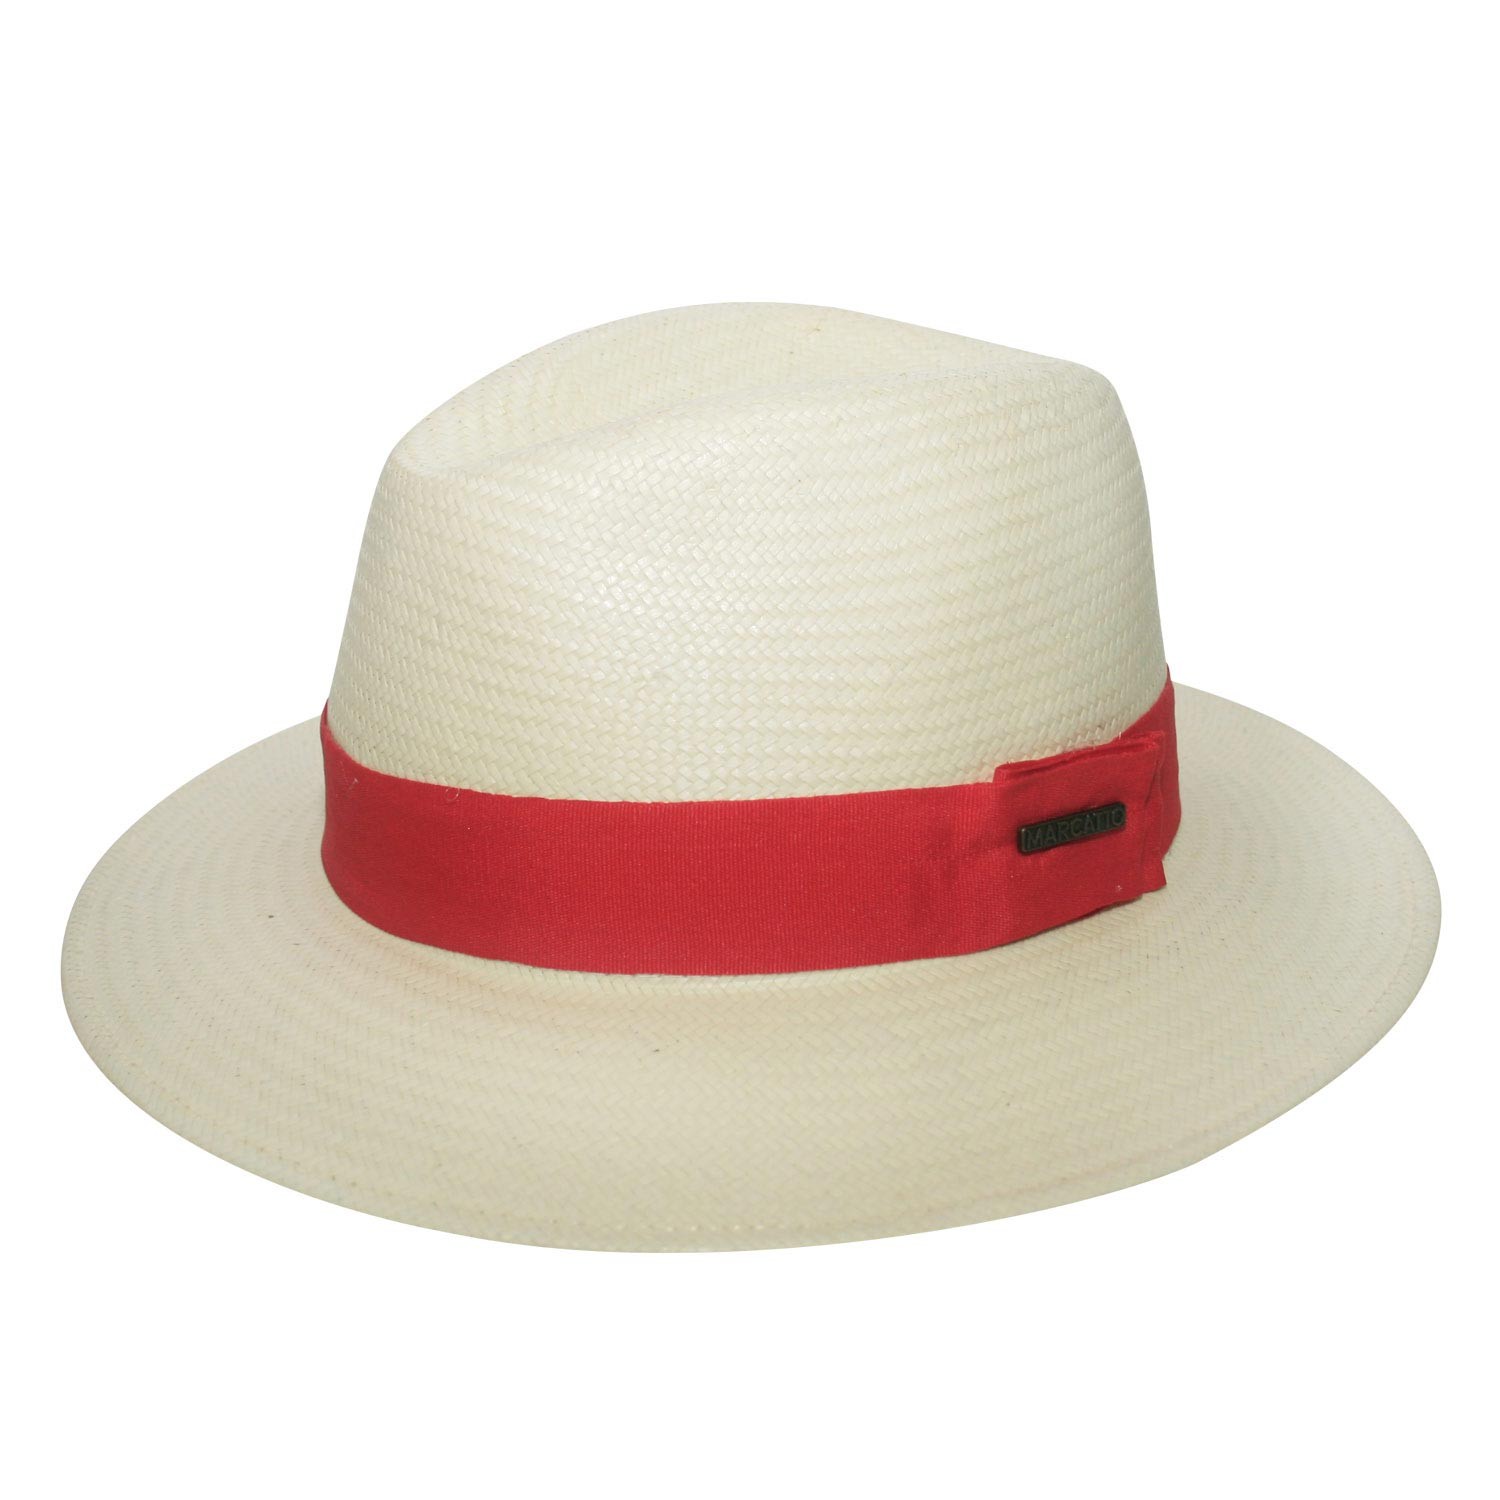 Chapéu com fita vermelha marcatto